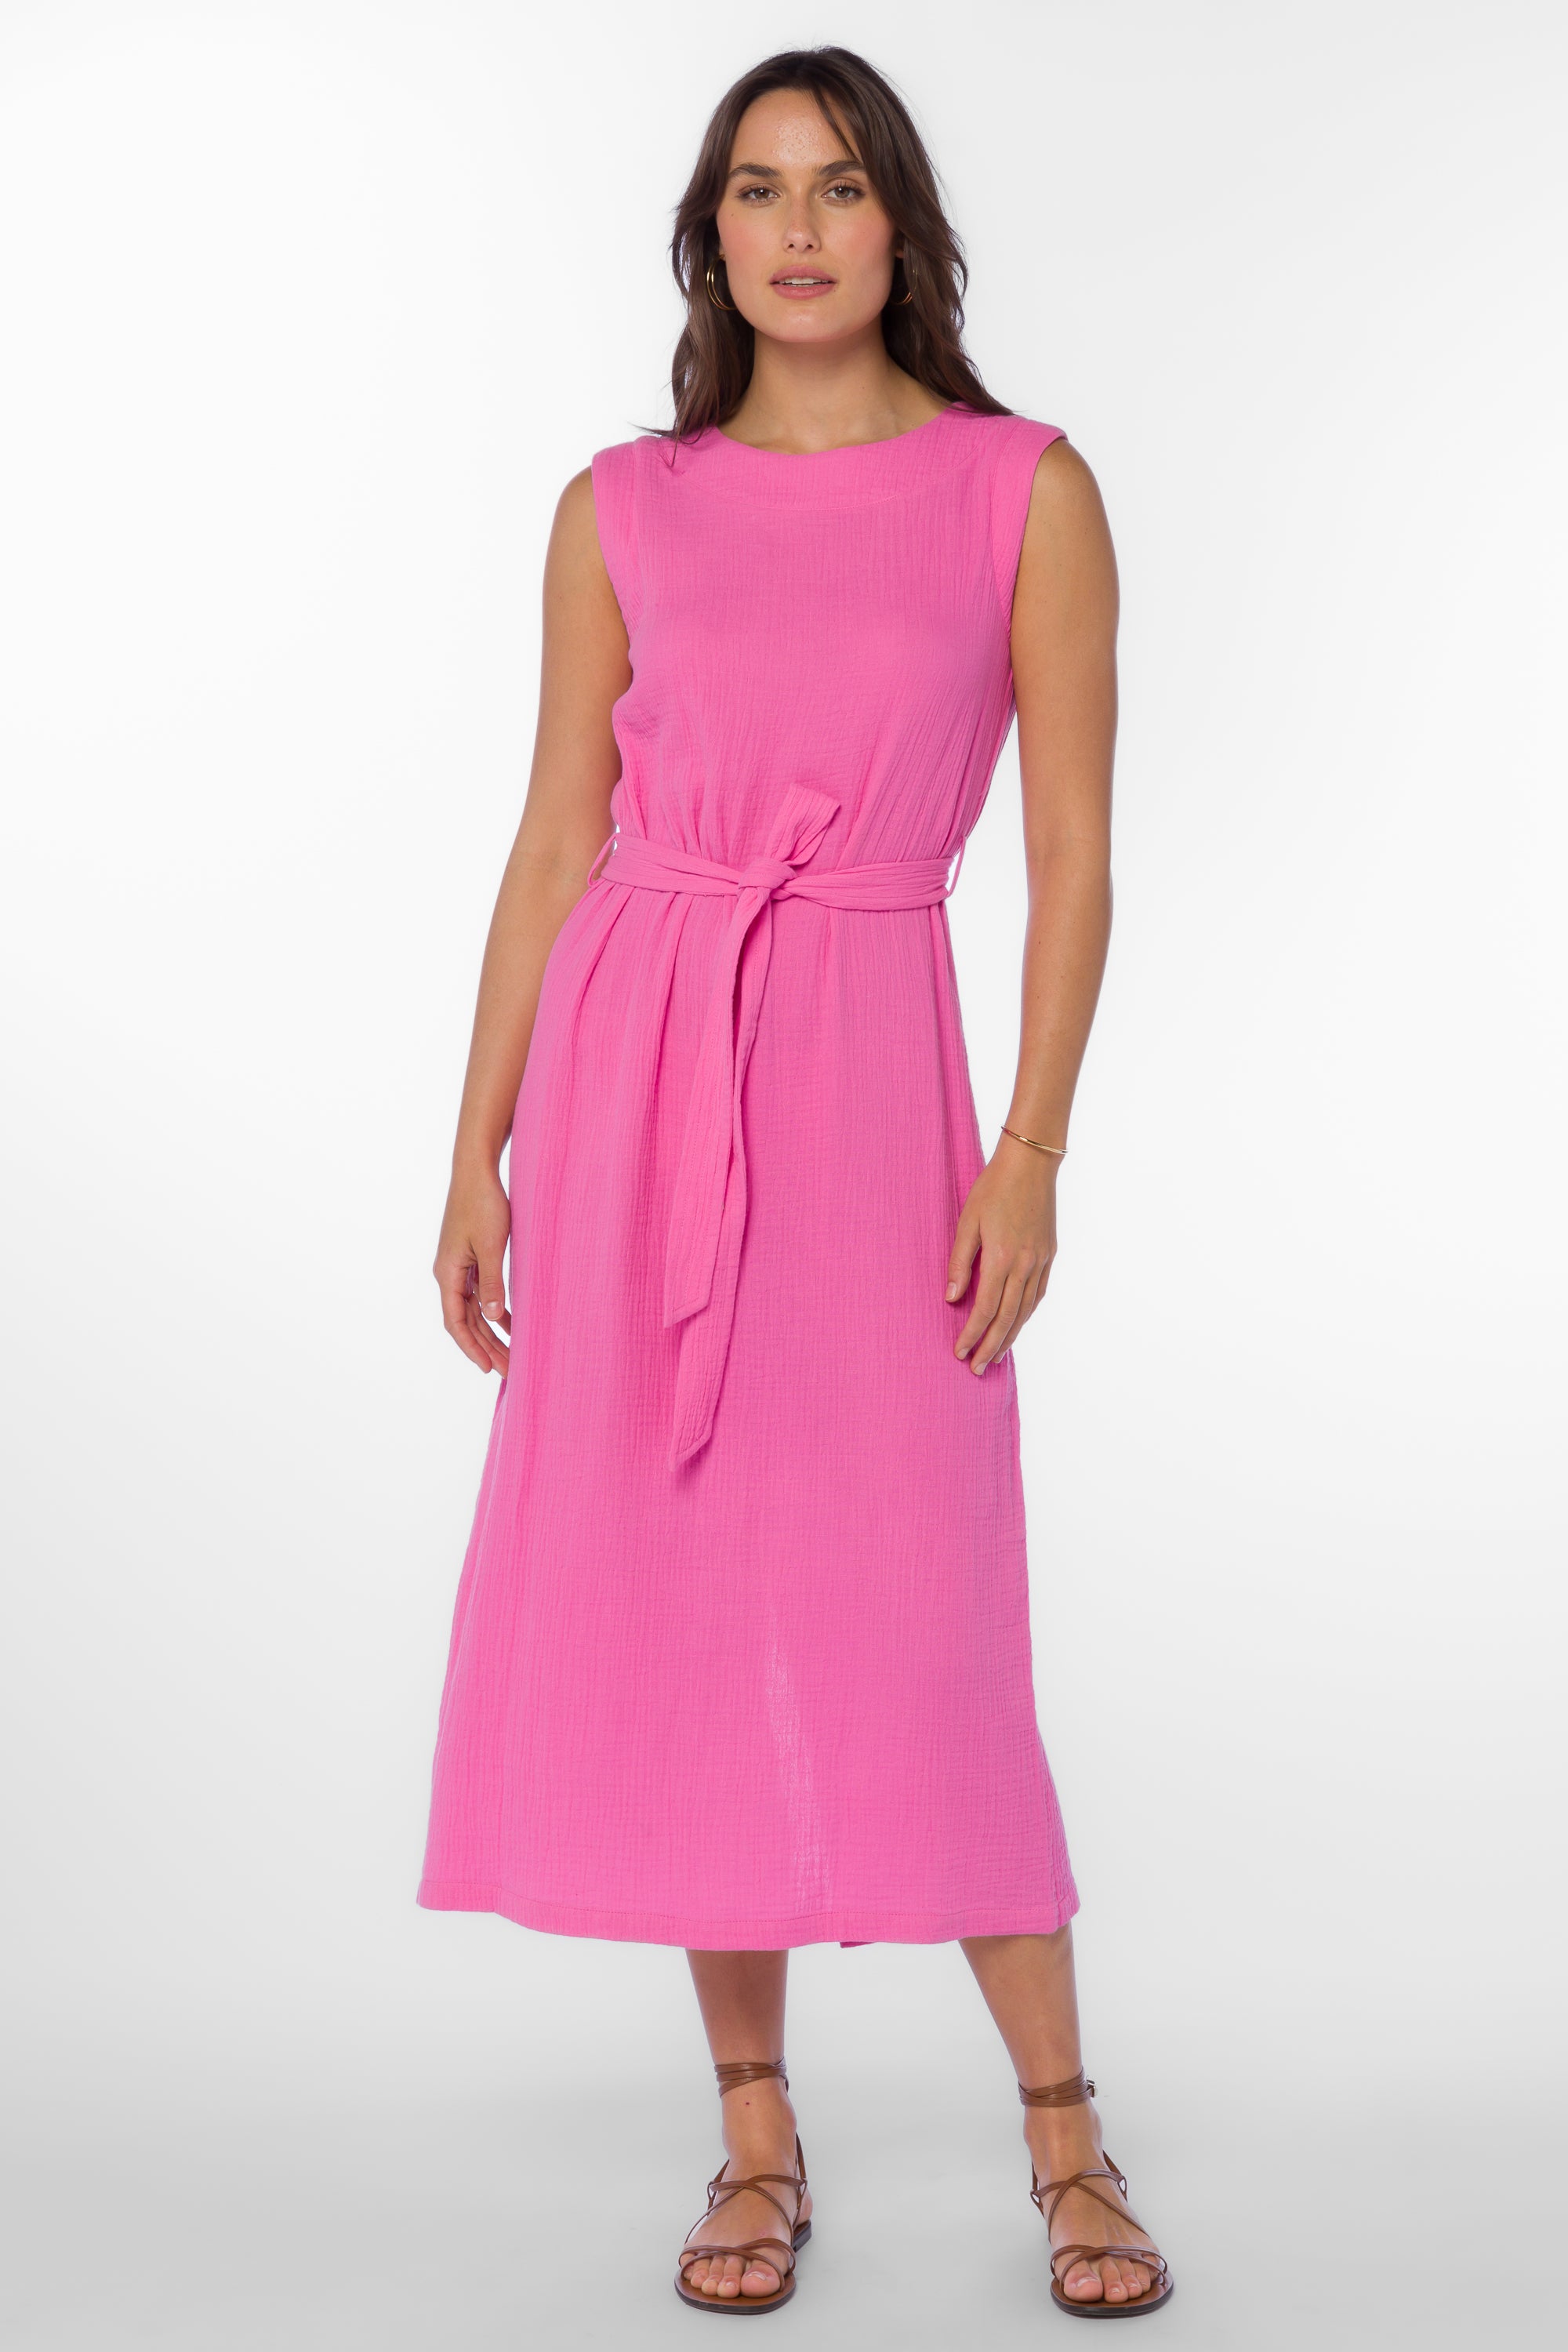 Aurelie Bright Pink Dress - Dresses - Velvet Heart Clothing